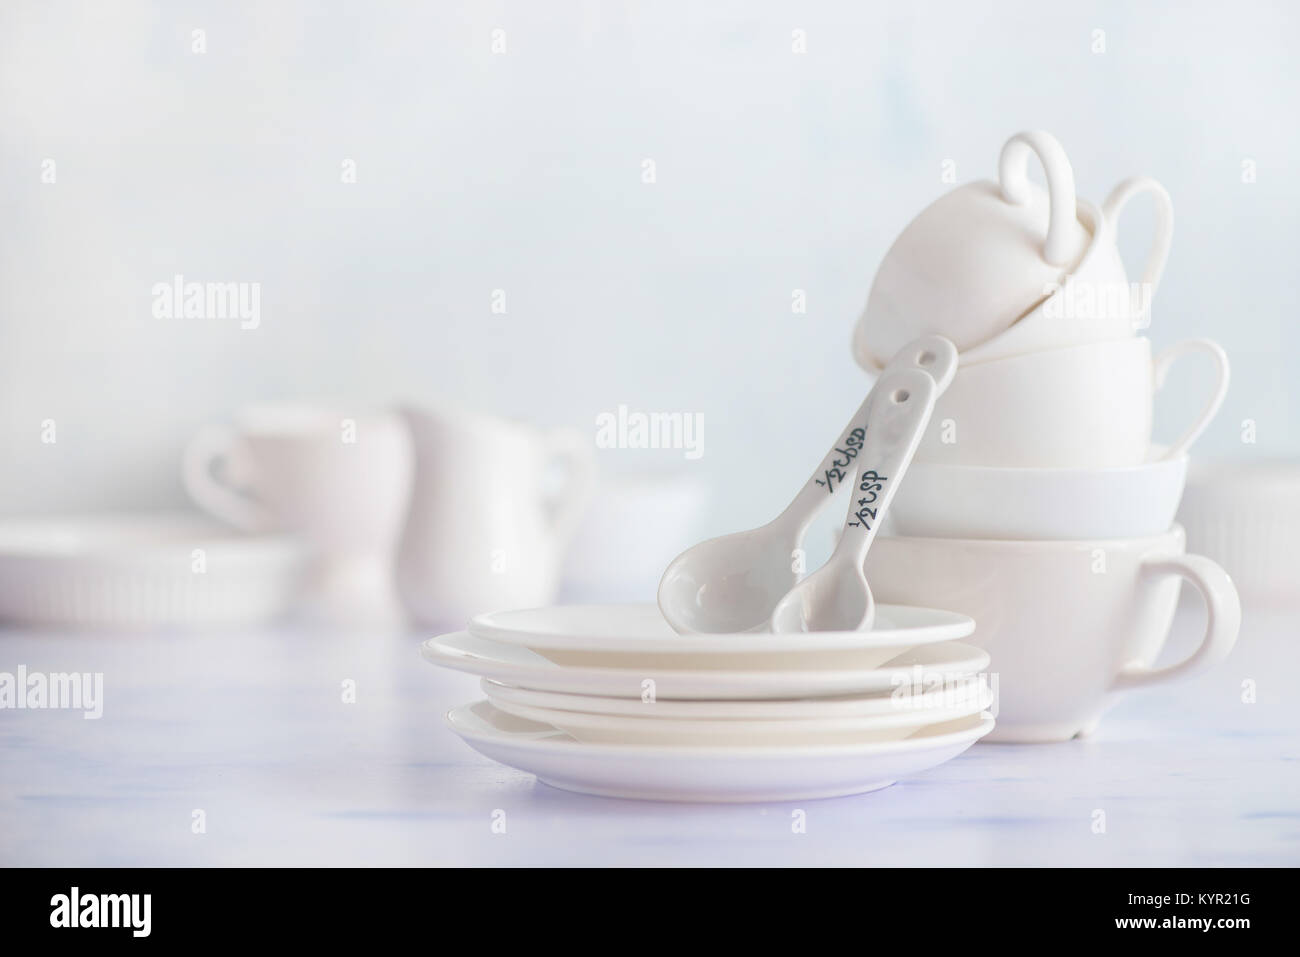 Stapel von teatime Geschirr. Porzellan Tassen und Untertassen auf weißem Holz- Hintergrund. High key Essen Fotografie. Stockfoto